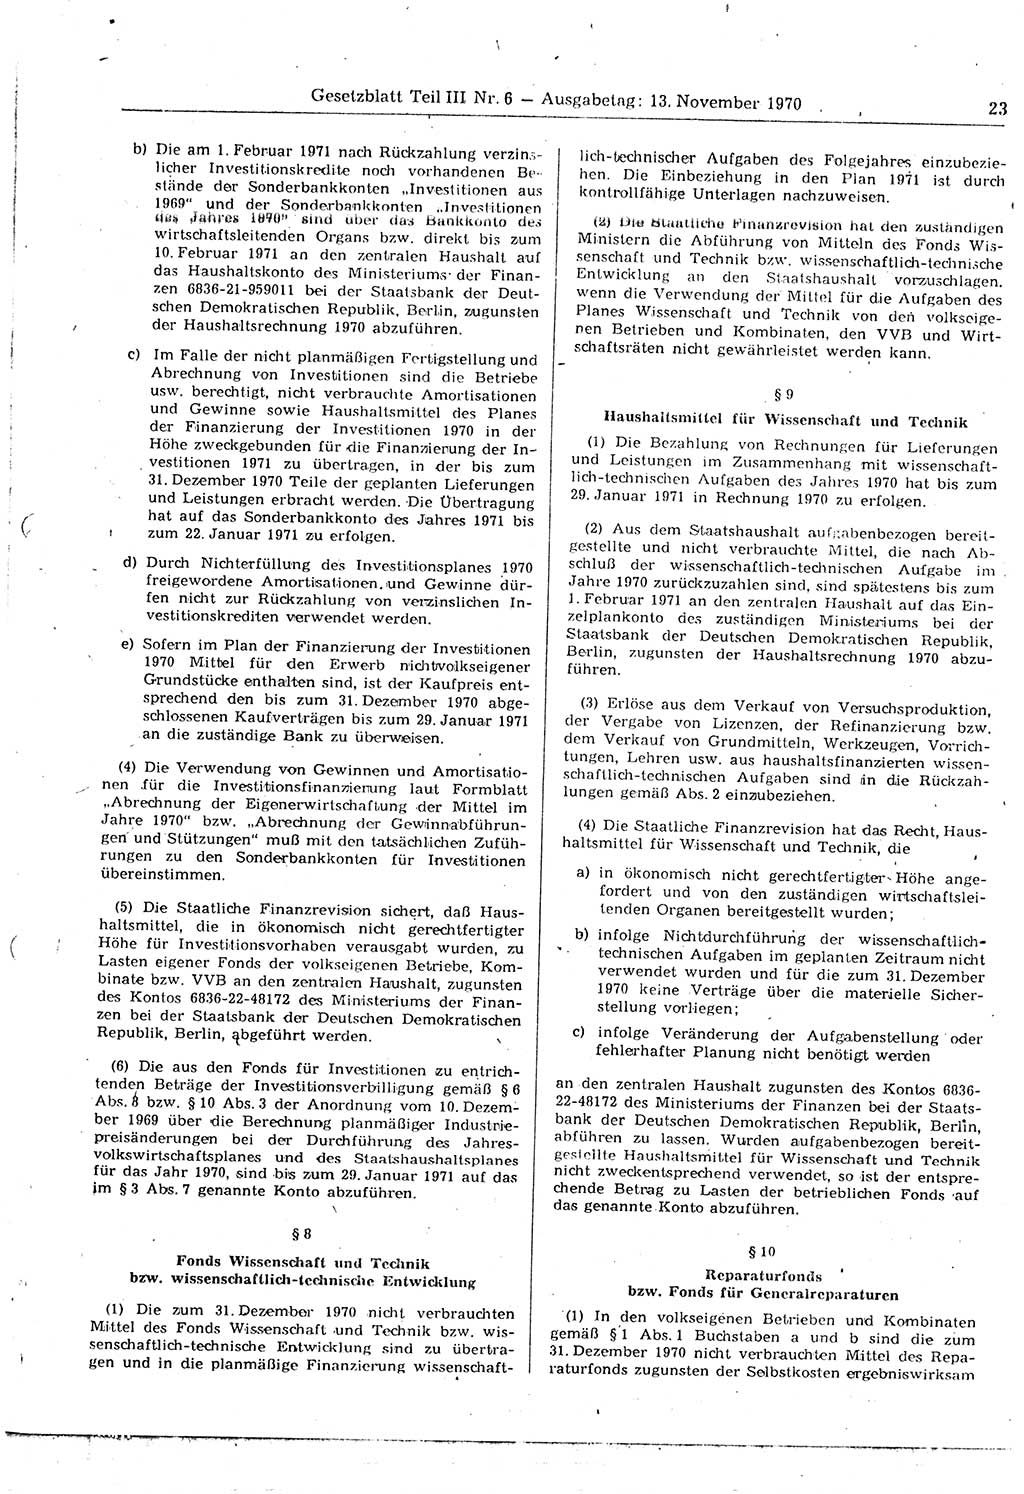 Gesetzblatt (GBl.) der Deutschen Demokratischen Republik (DDR) Teil ⅠⅠⅠ 1970, Seite 23 (GBl. DDR ⅠⅠⅠ 1970, S. 23)